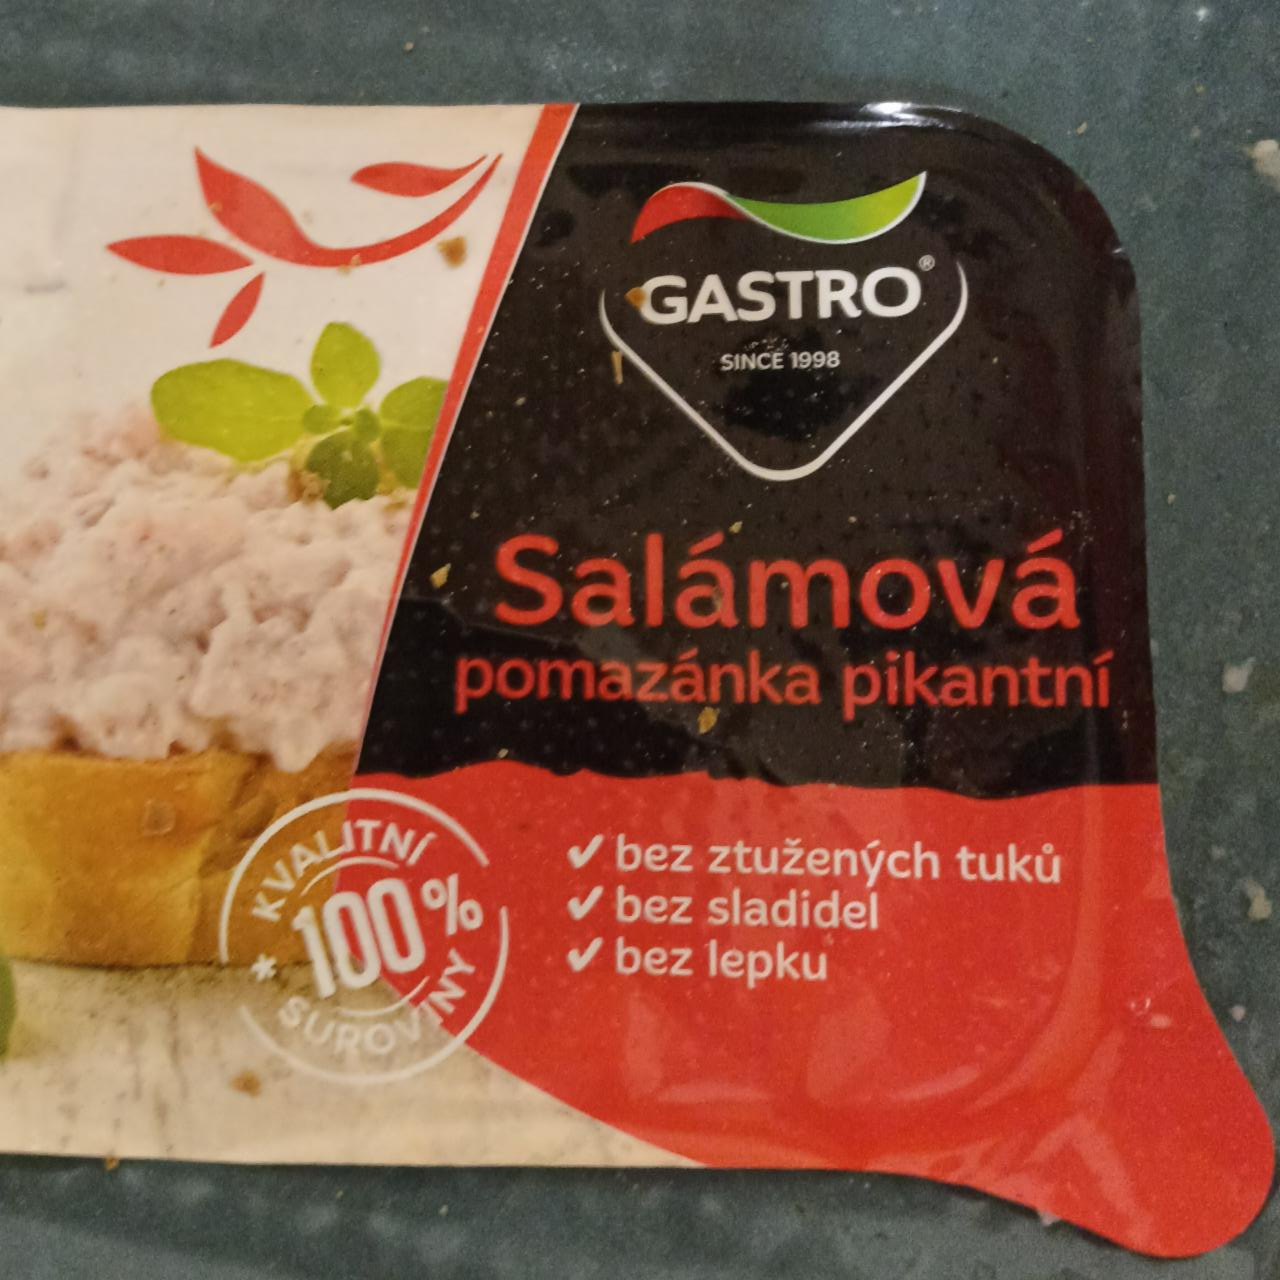 Фото - Sálamová pomazánka pikantní Gastro